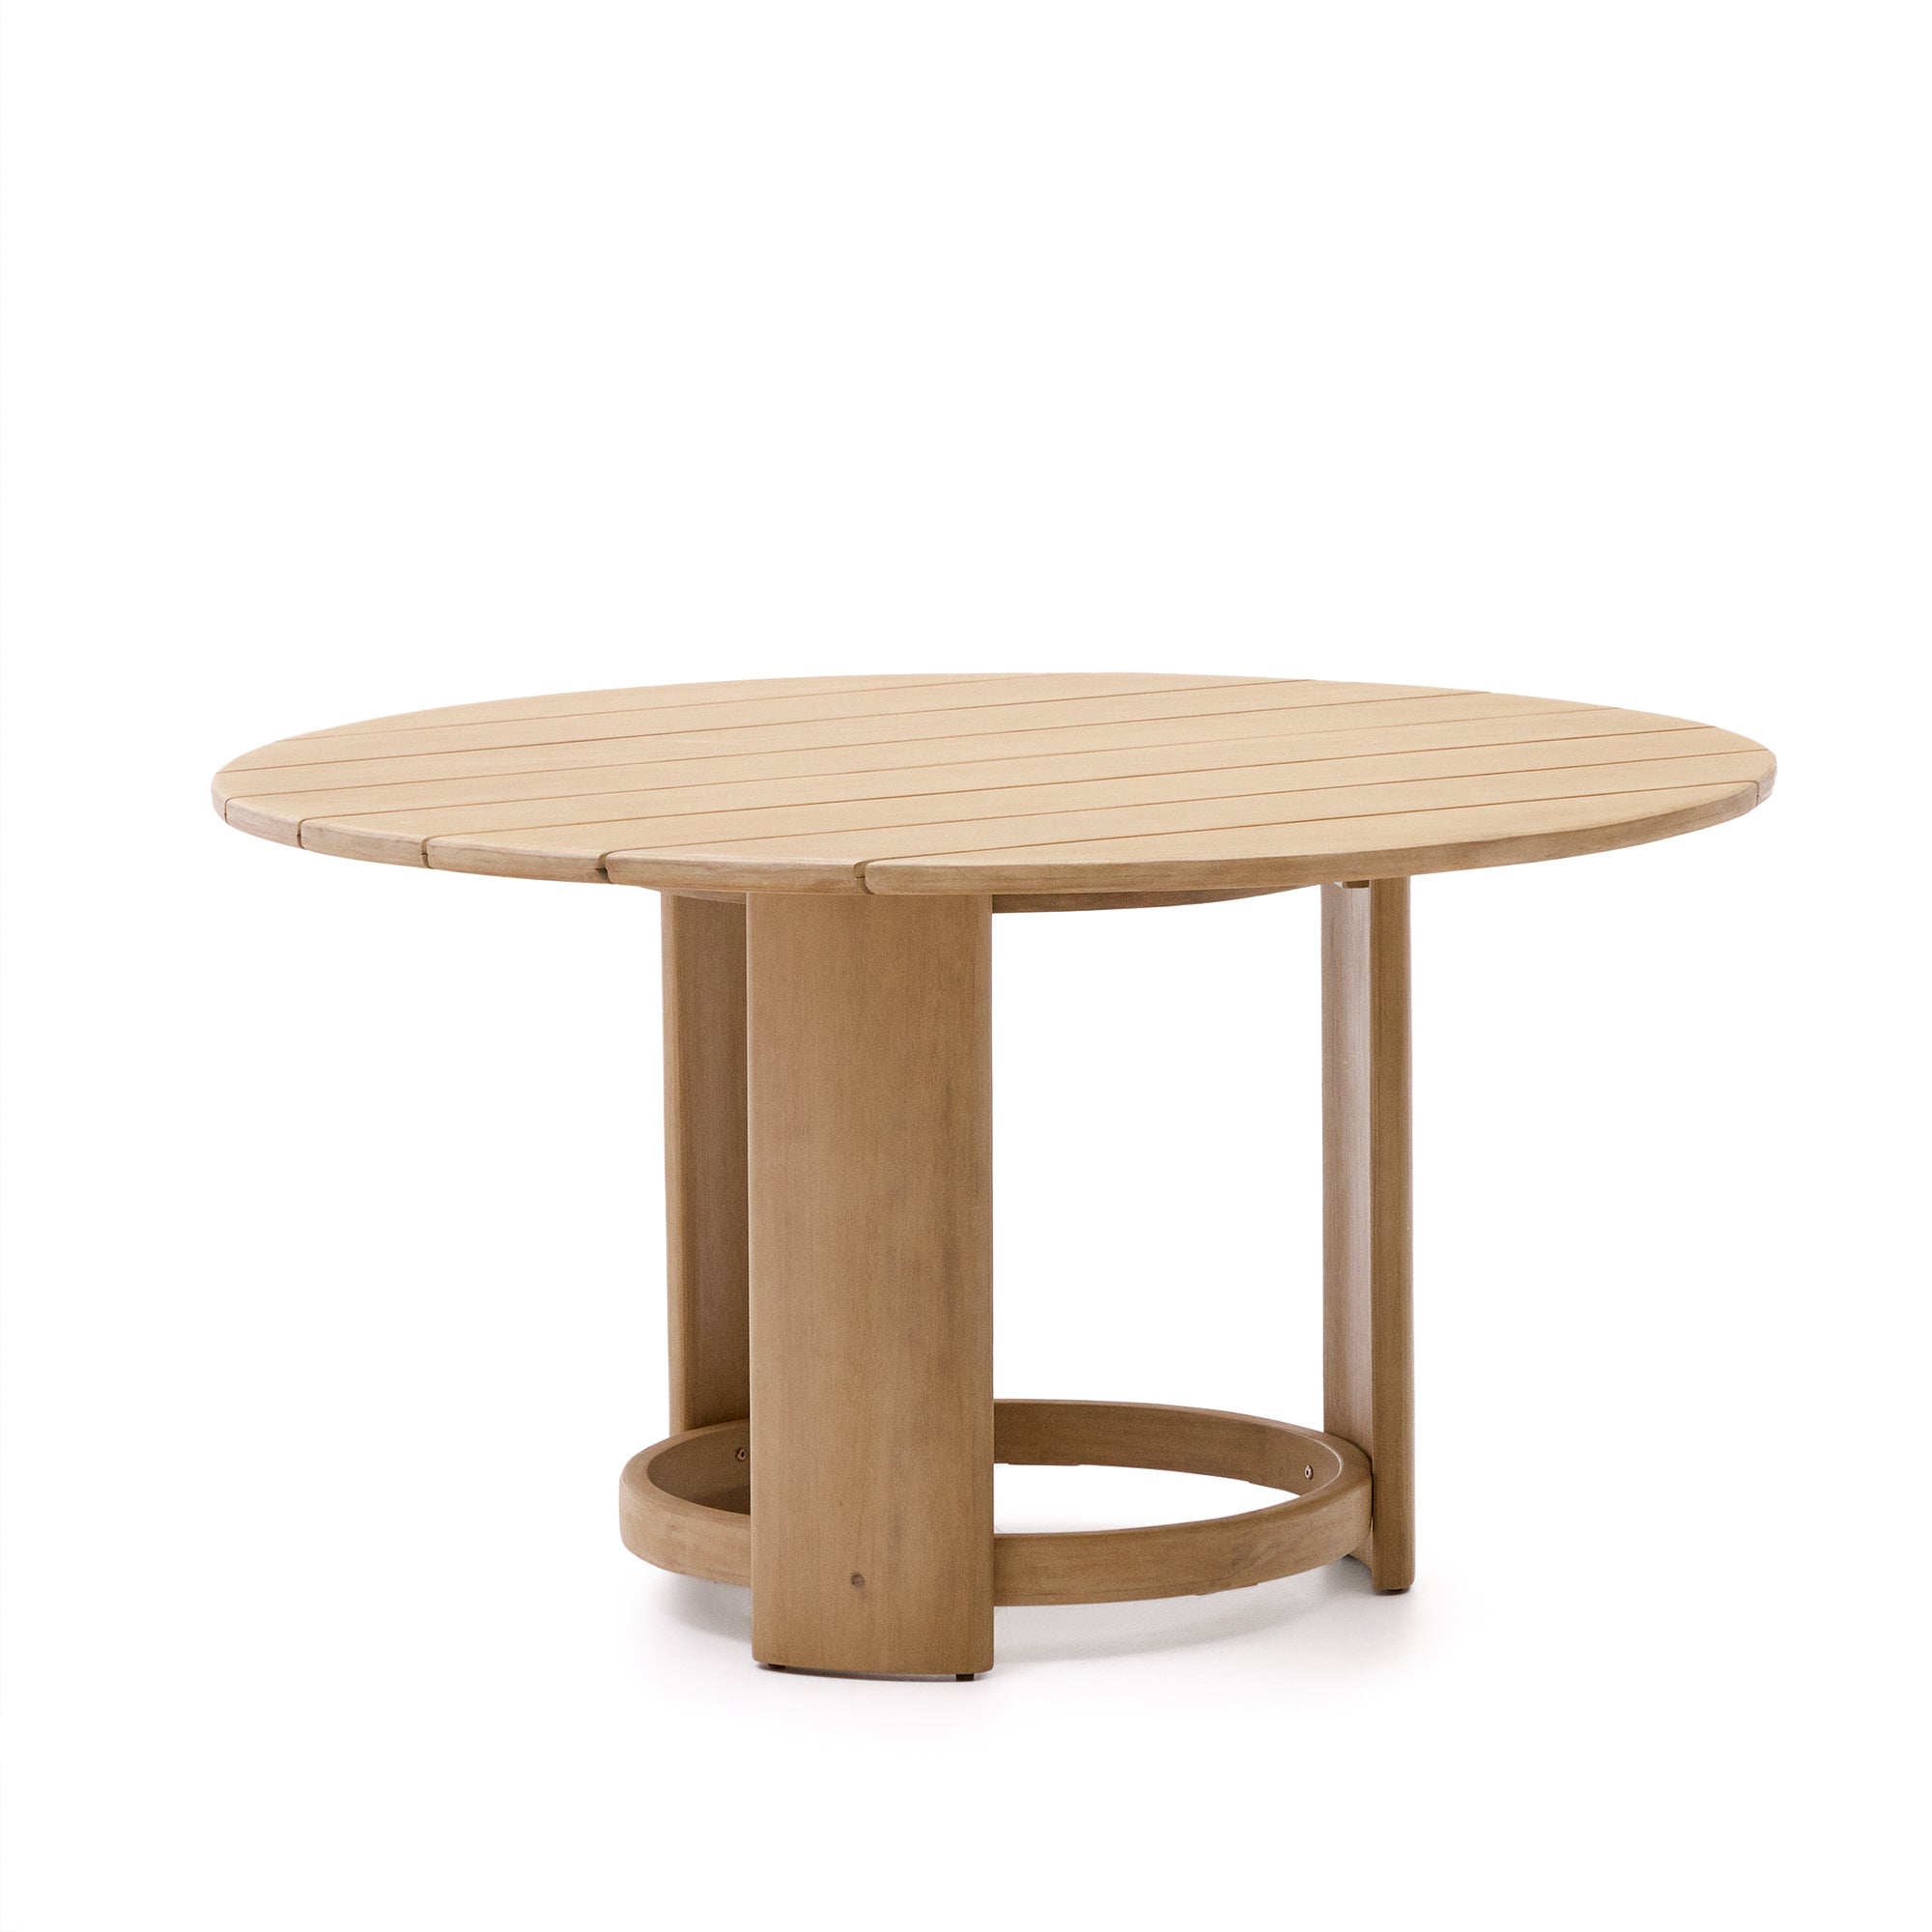 Xoriguer kerek asztal szilárd eukaliptusz fából Ø140 cm 100% FSC